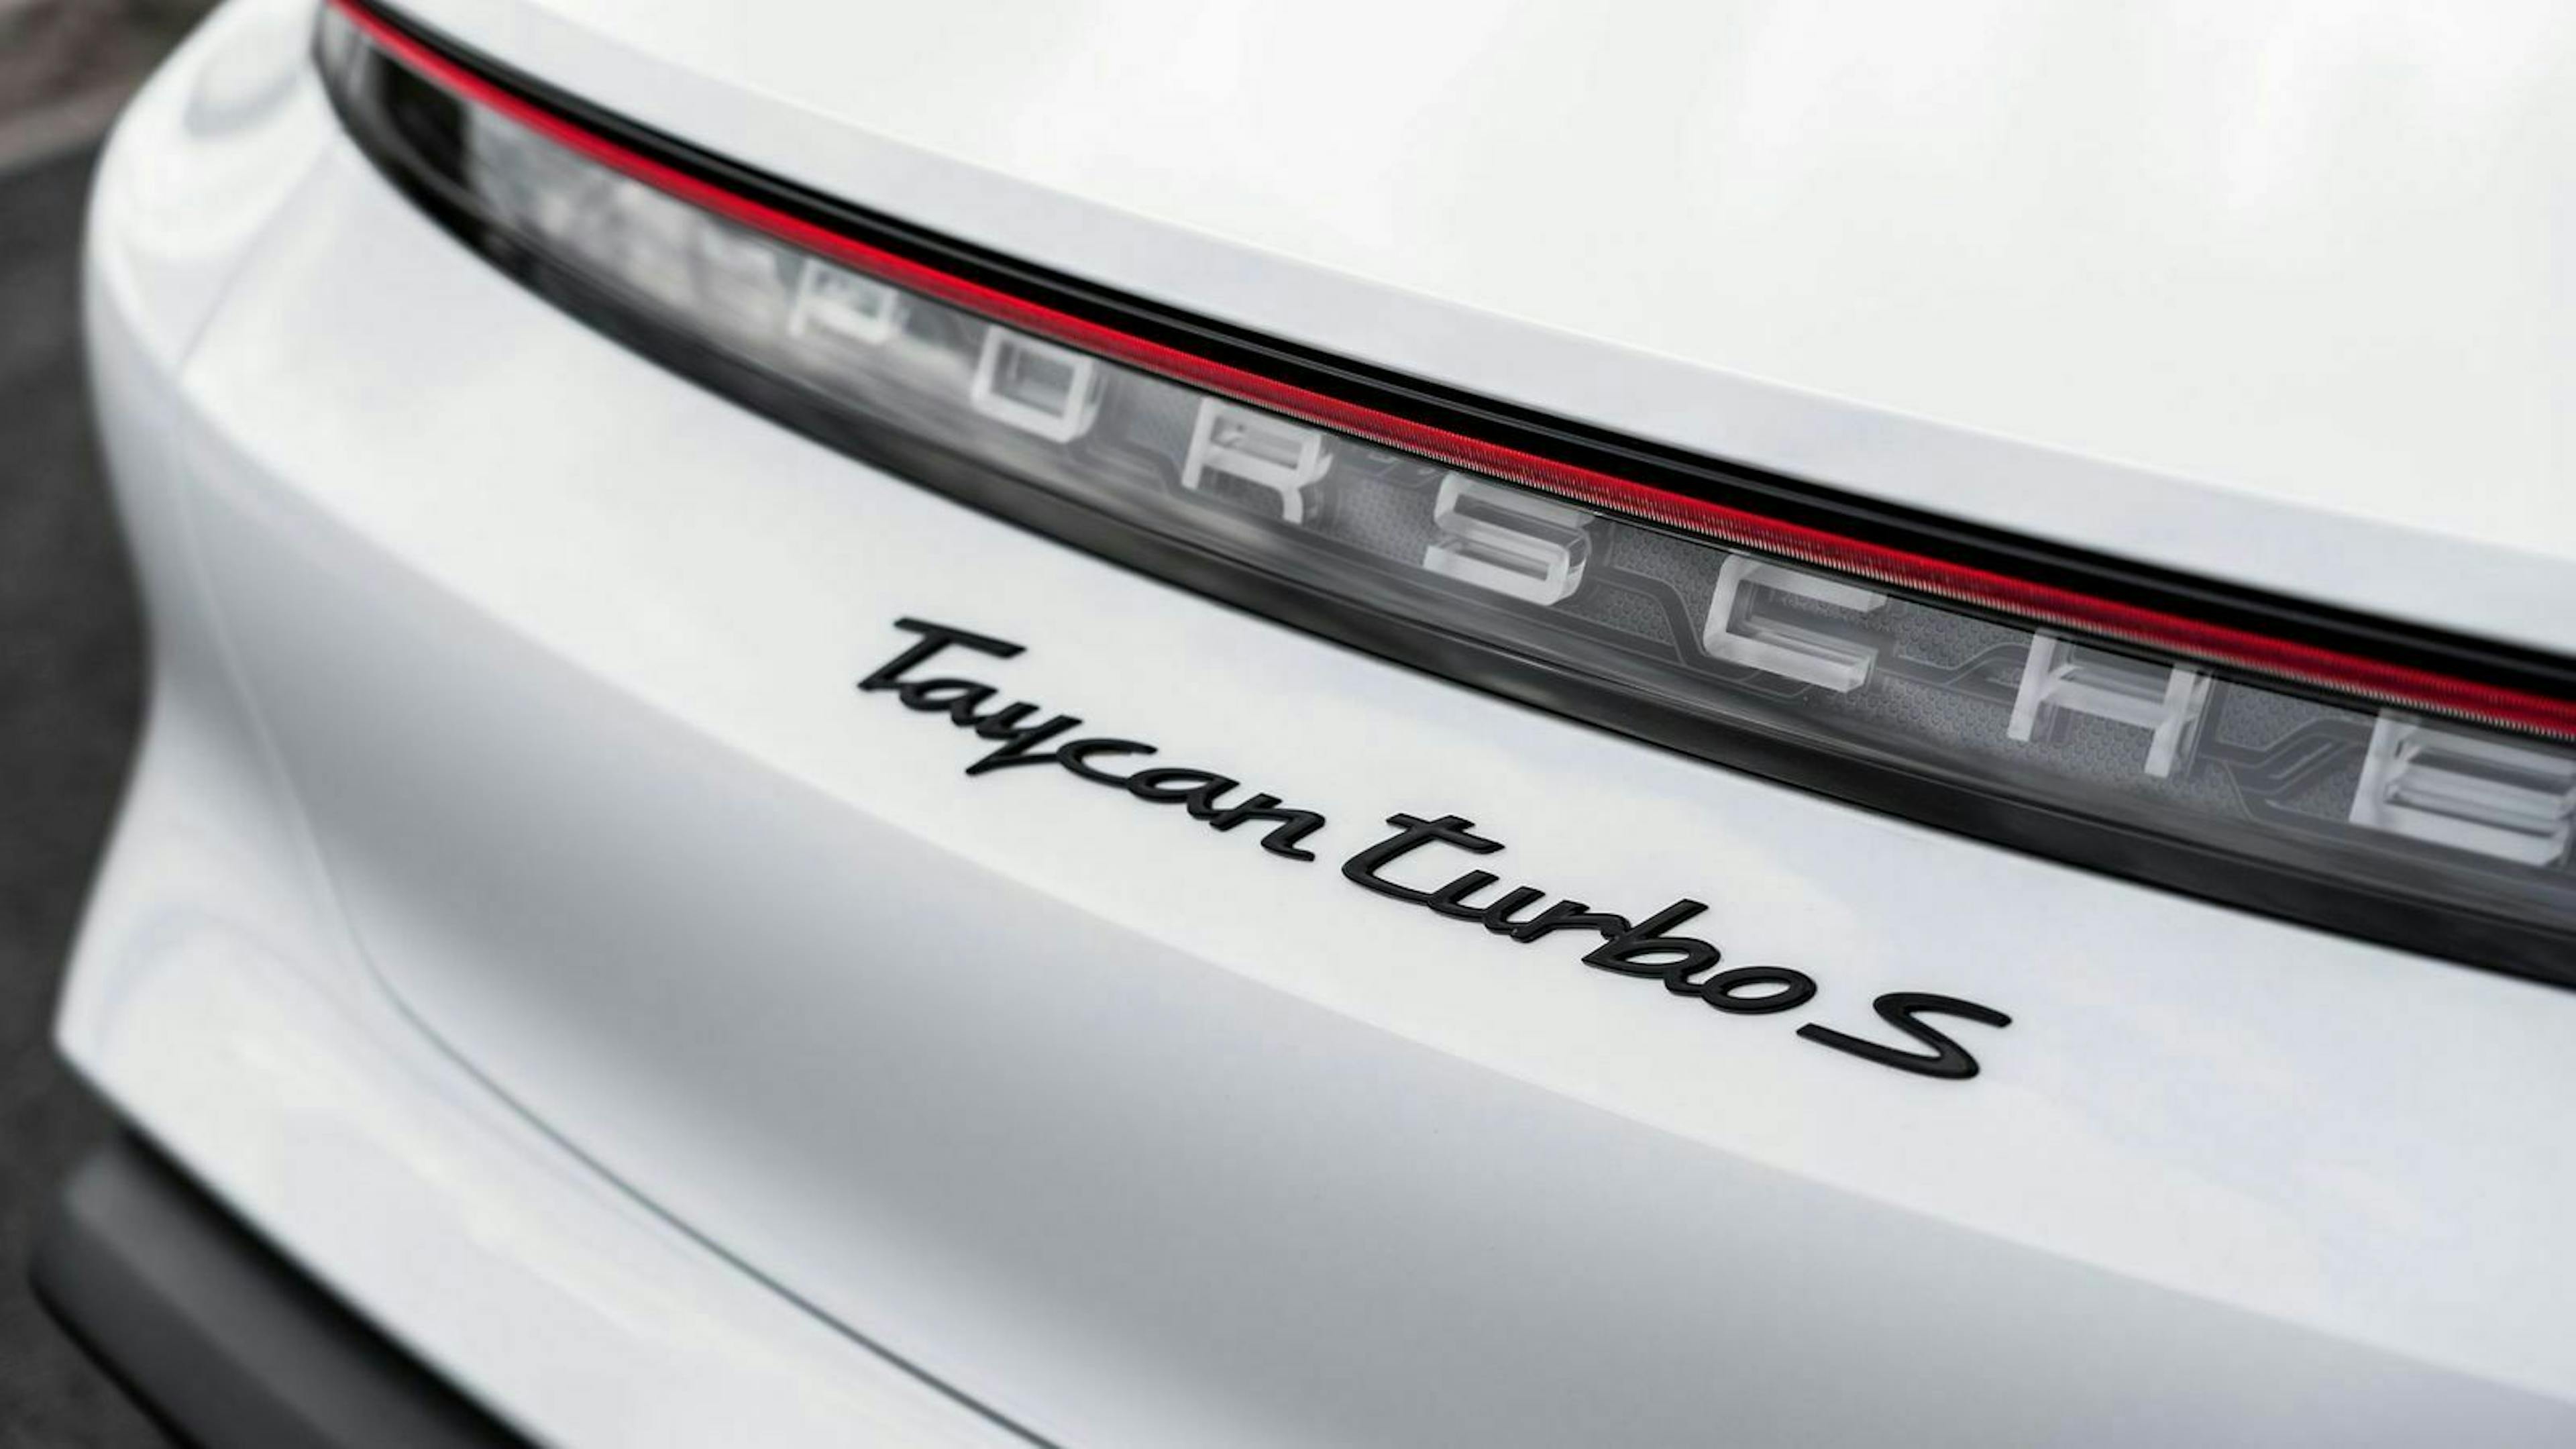 Einen Turbolader tragen die elektrischen Taycan Turbo und Taycan Turbo S natürlich nicht – trotz der Bezeichnung